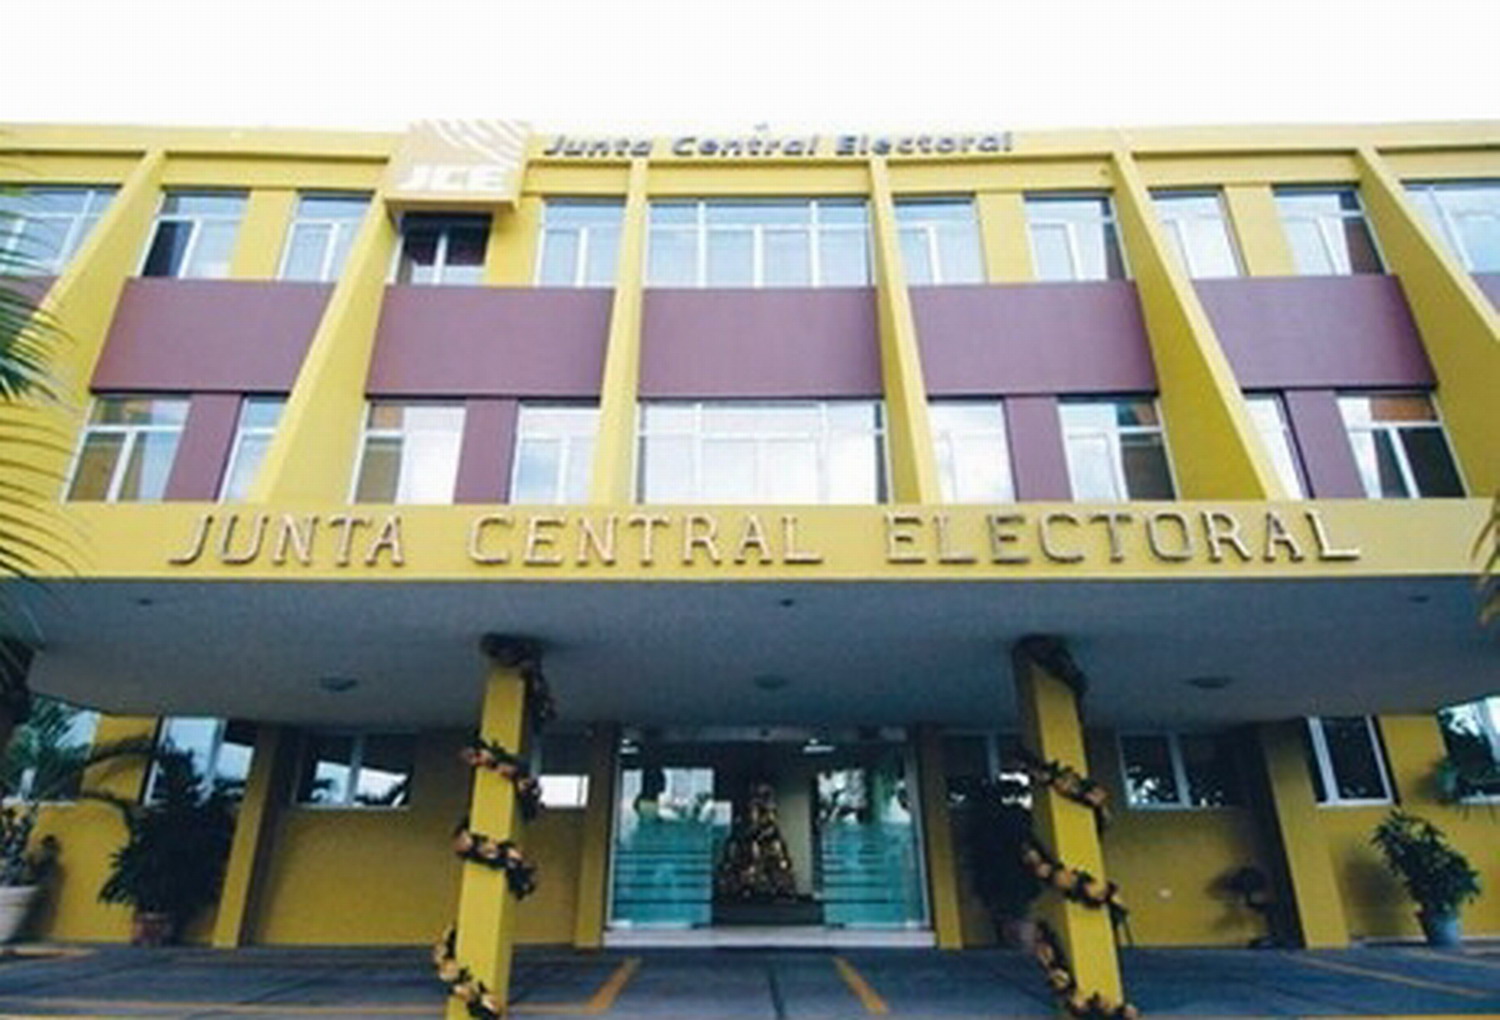 http://www.ultimasnoticias.com.do/wp-content/uploads/2013/12/junta-central-electoral-b.jpg